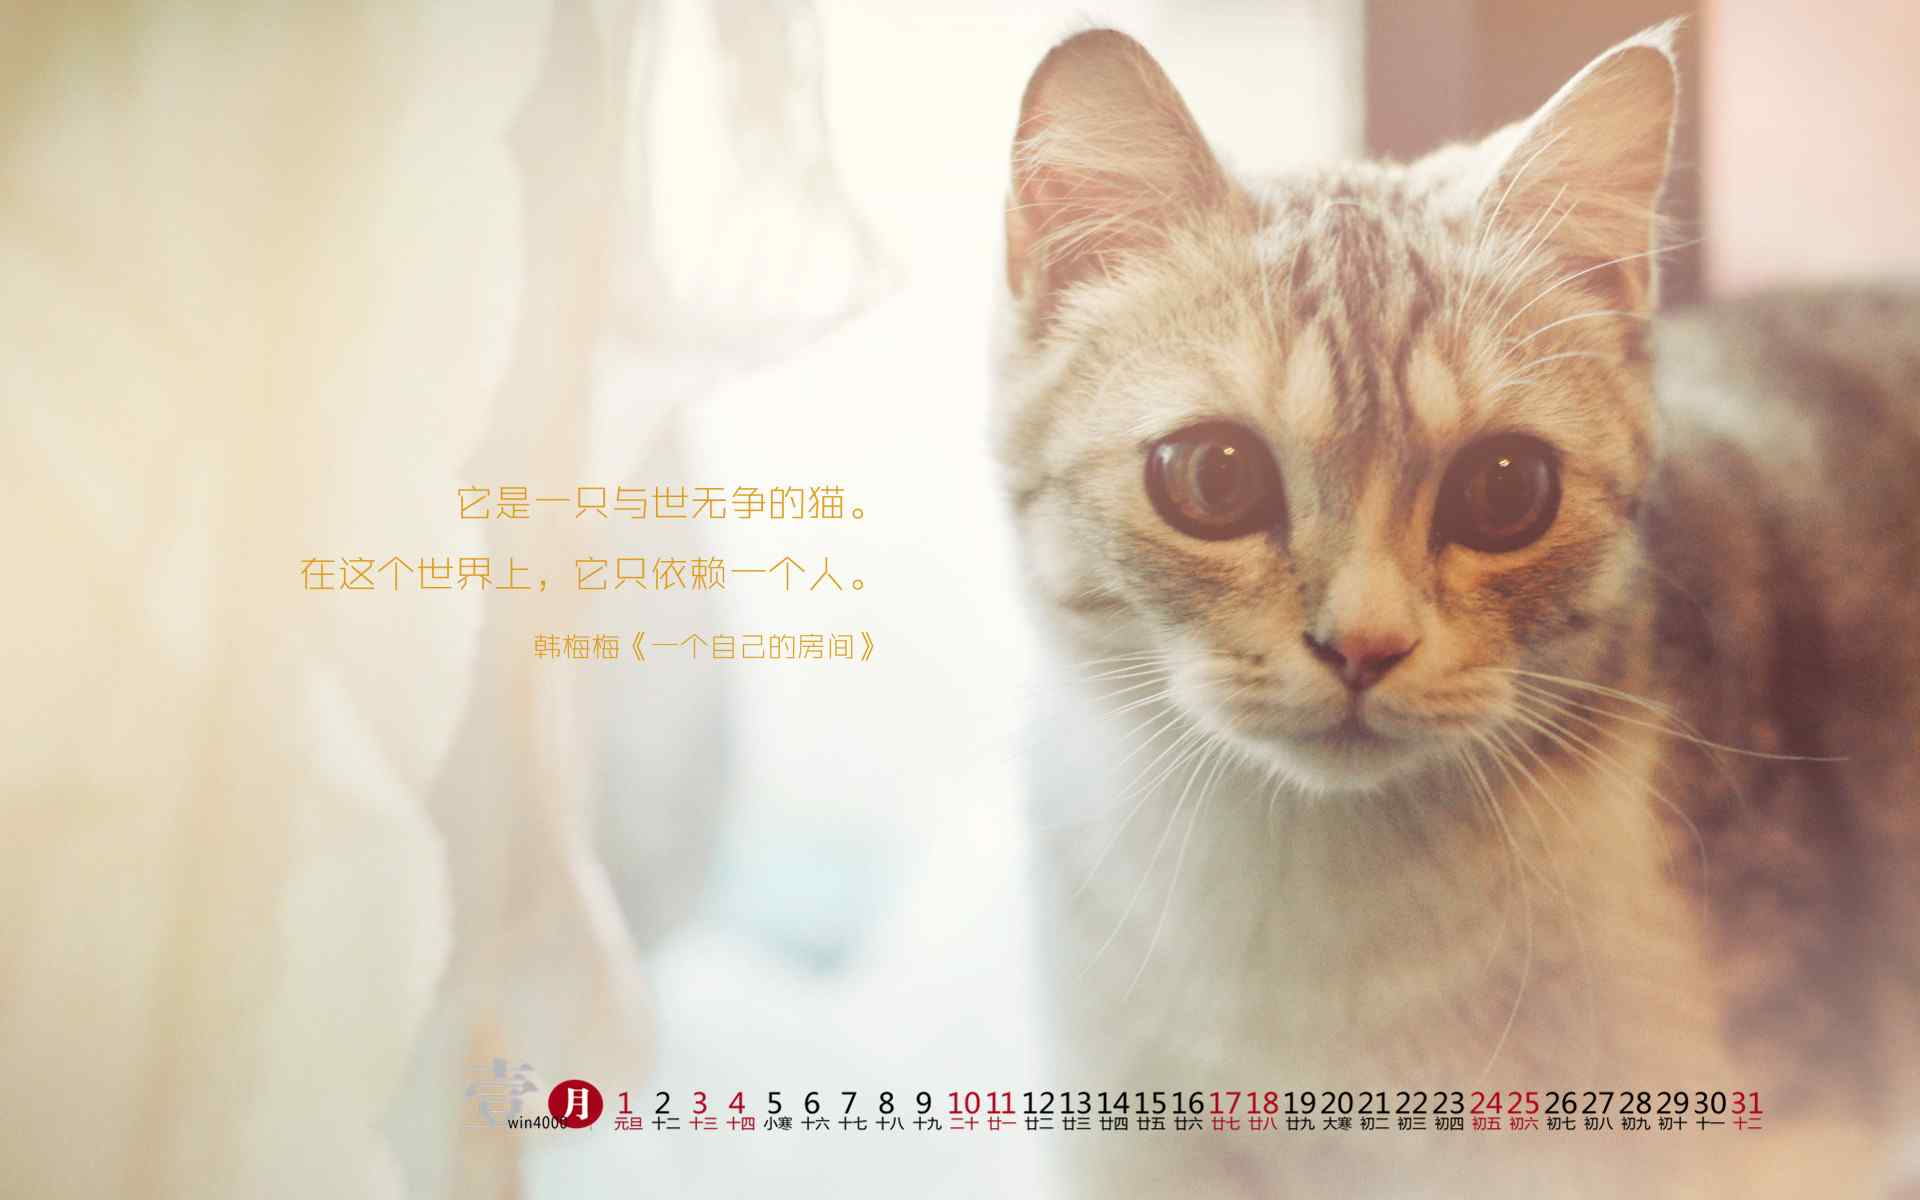 2017年1月日历萌萌哒小猫咪壁纸